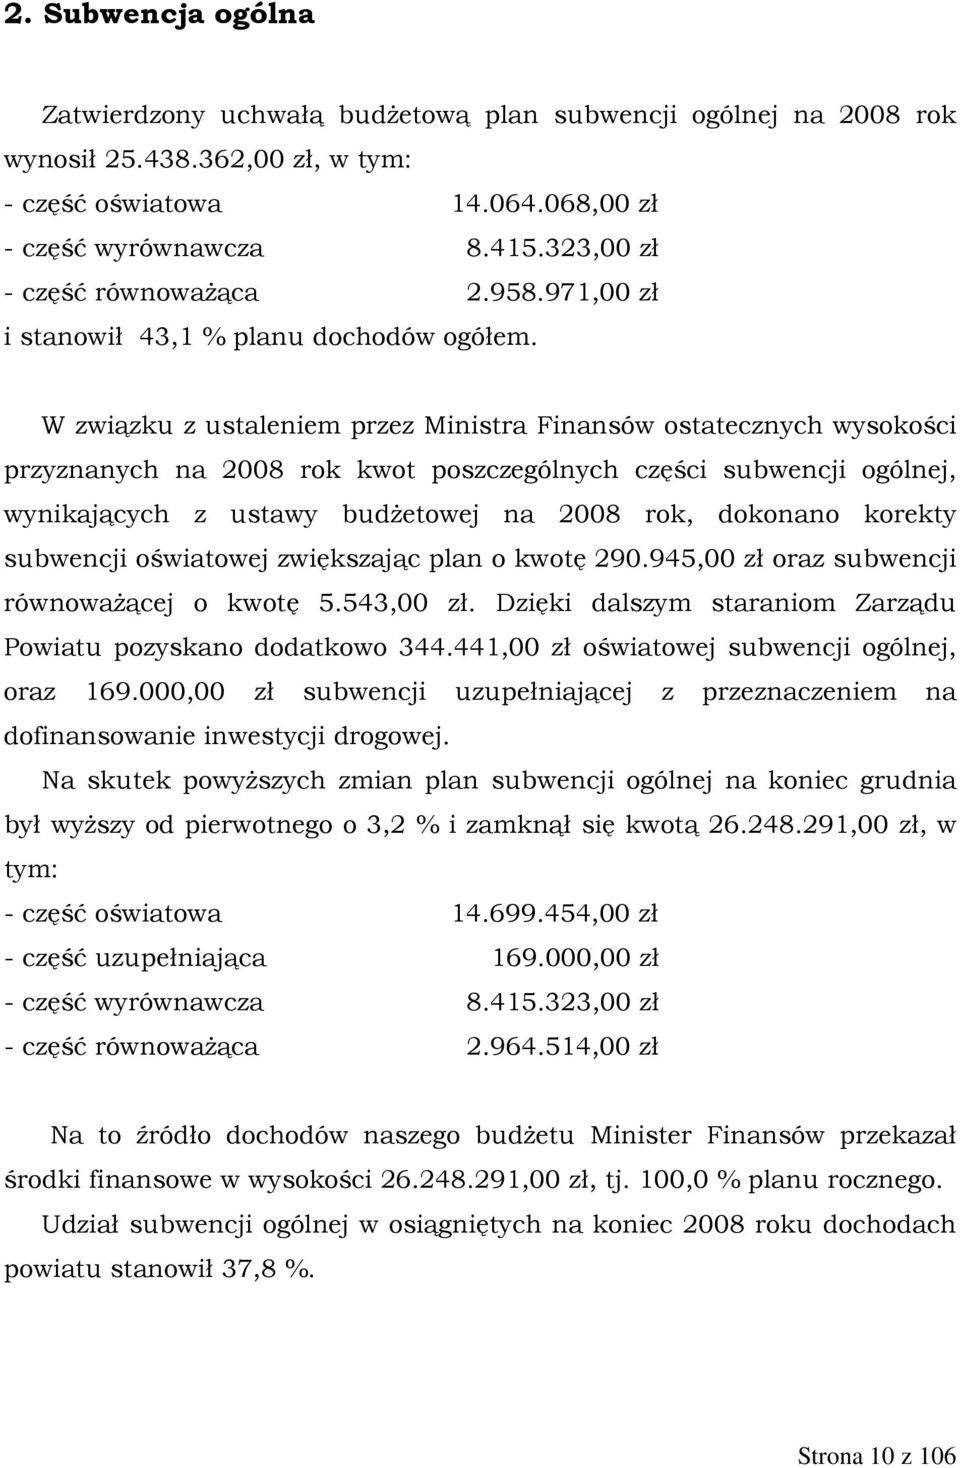 W związku z ustaleniem przez Ministra Finansów ostatecznych wysokości przyznanych na 2008 rok kwot poszczególnych części subwencji ogólnej, wynikających z ustawy budŝetowej na 2008 rok, dokonano